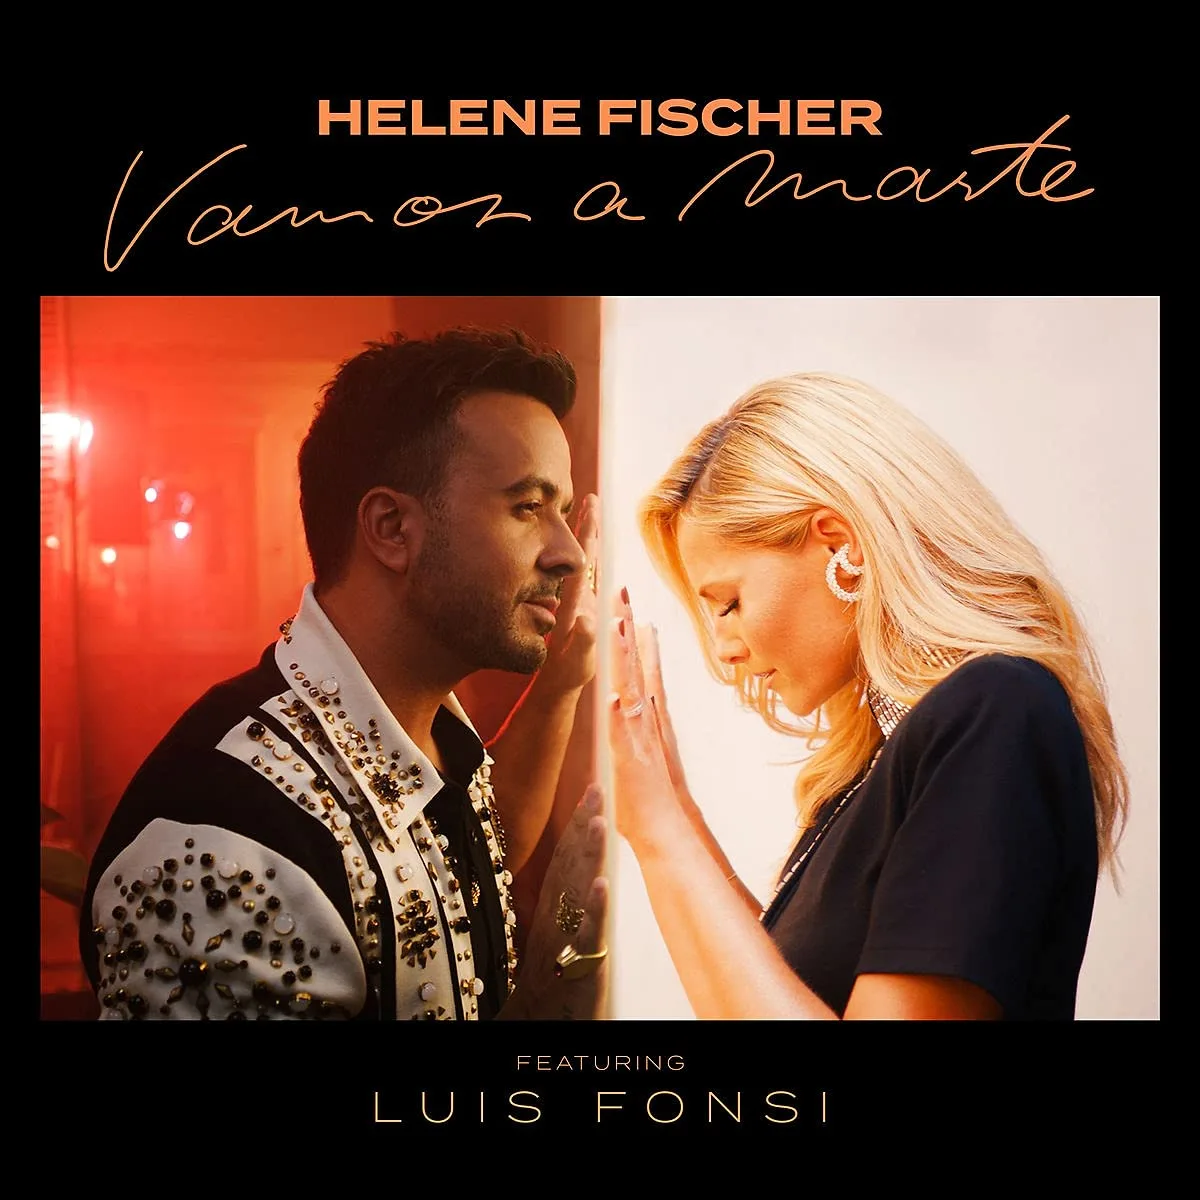 "Musikalisch billig": Helene Fischer erntet böse Kritik mit neuem Song